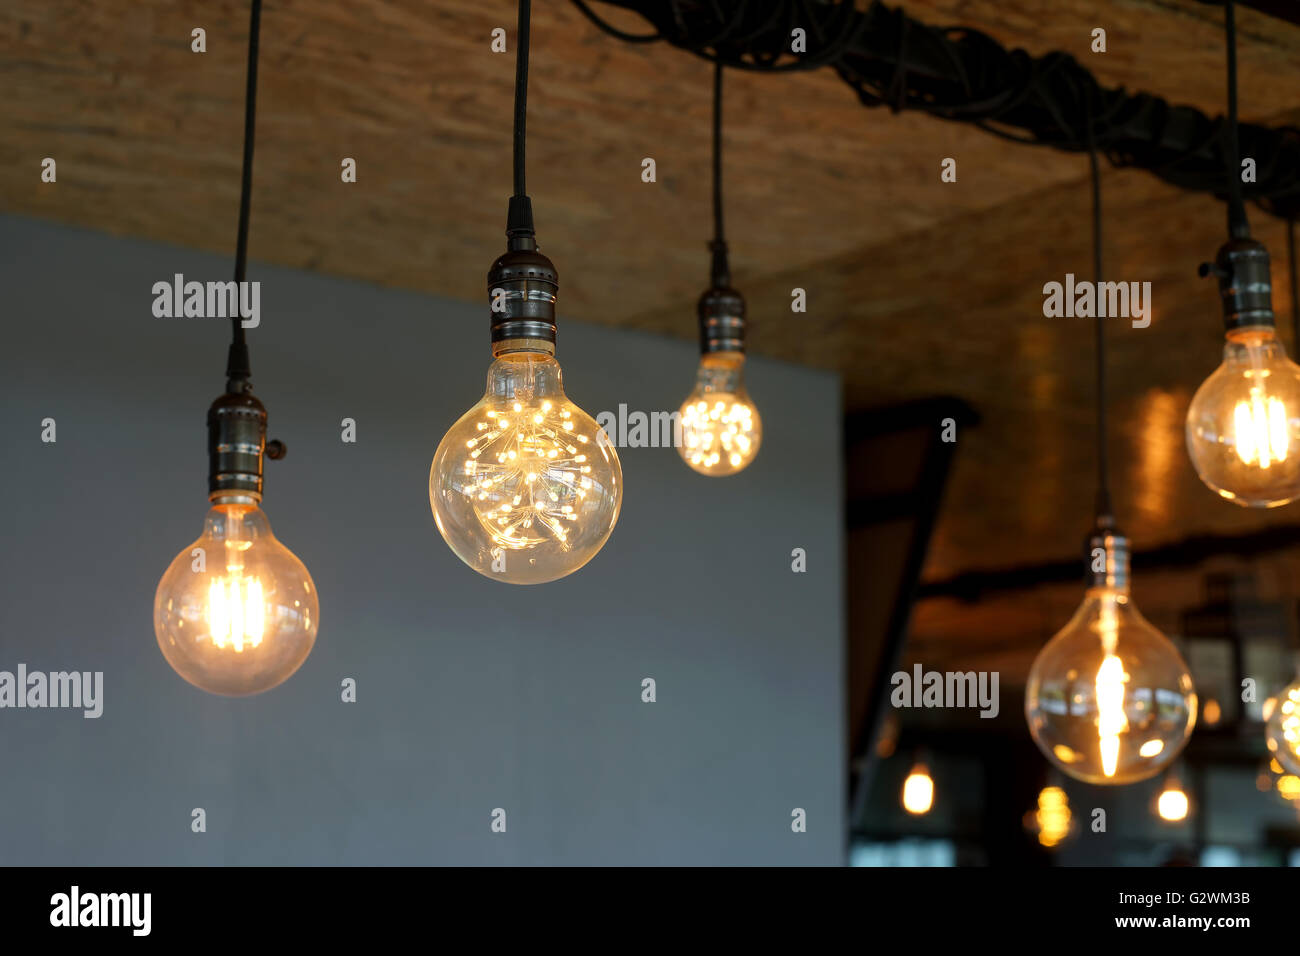 Ampoules tungstène antique décoratif accroché au plafond Banque D'Images